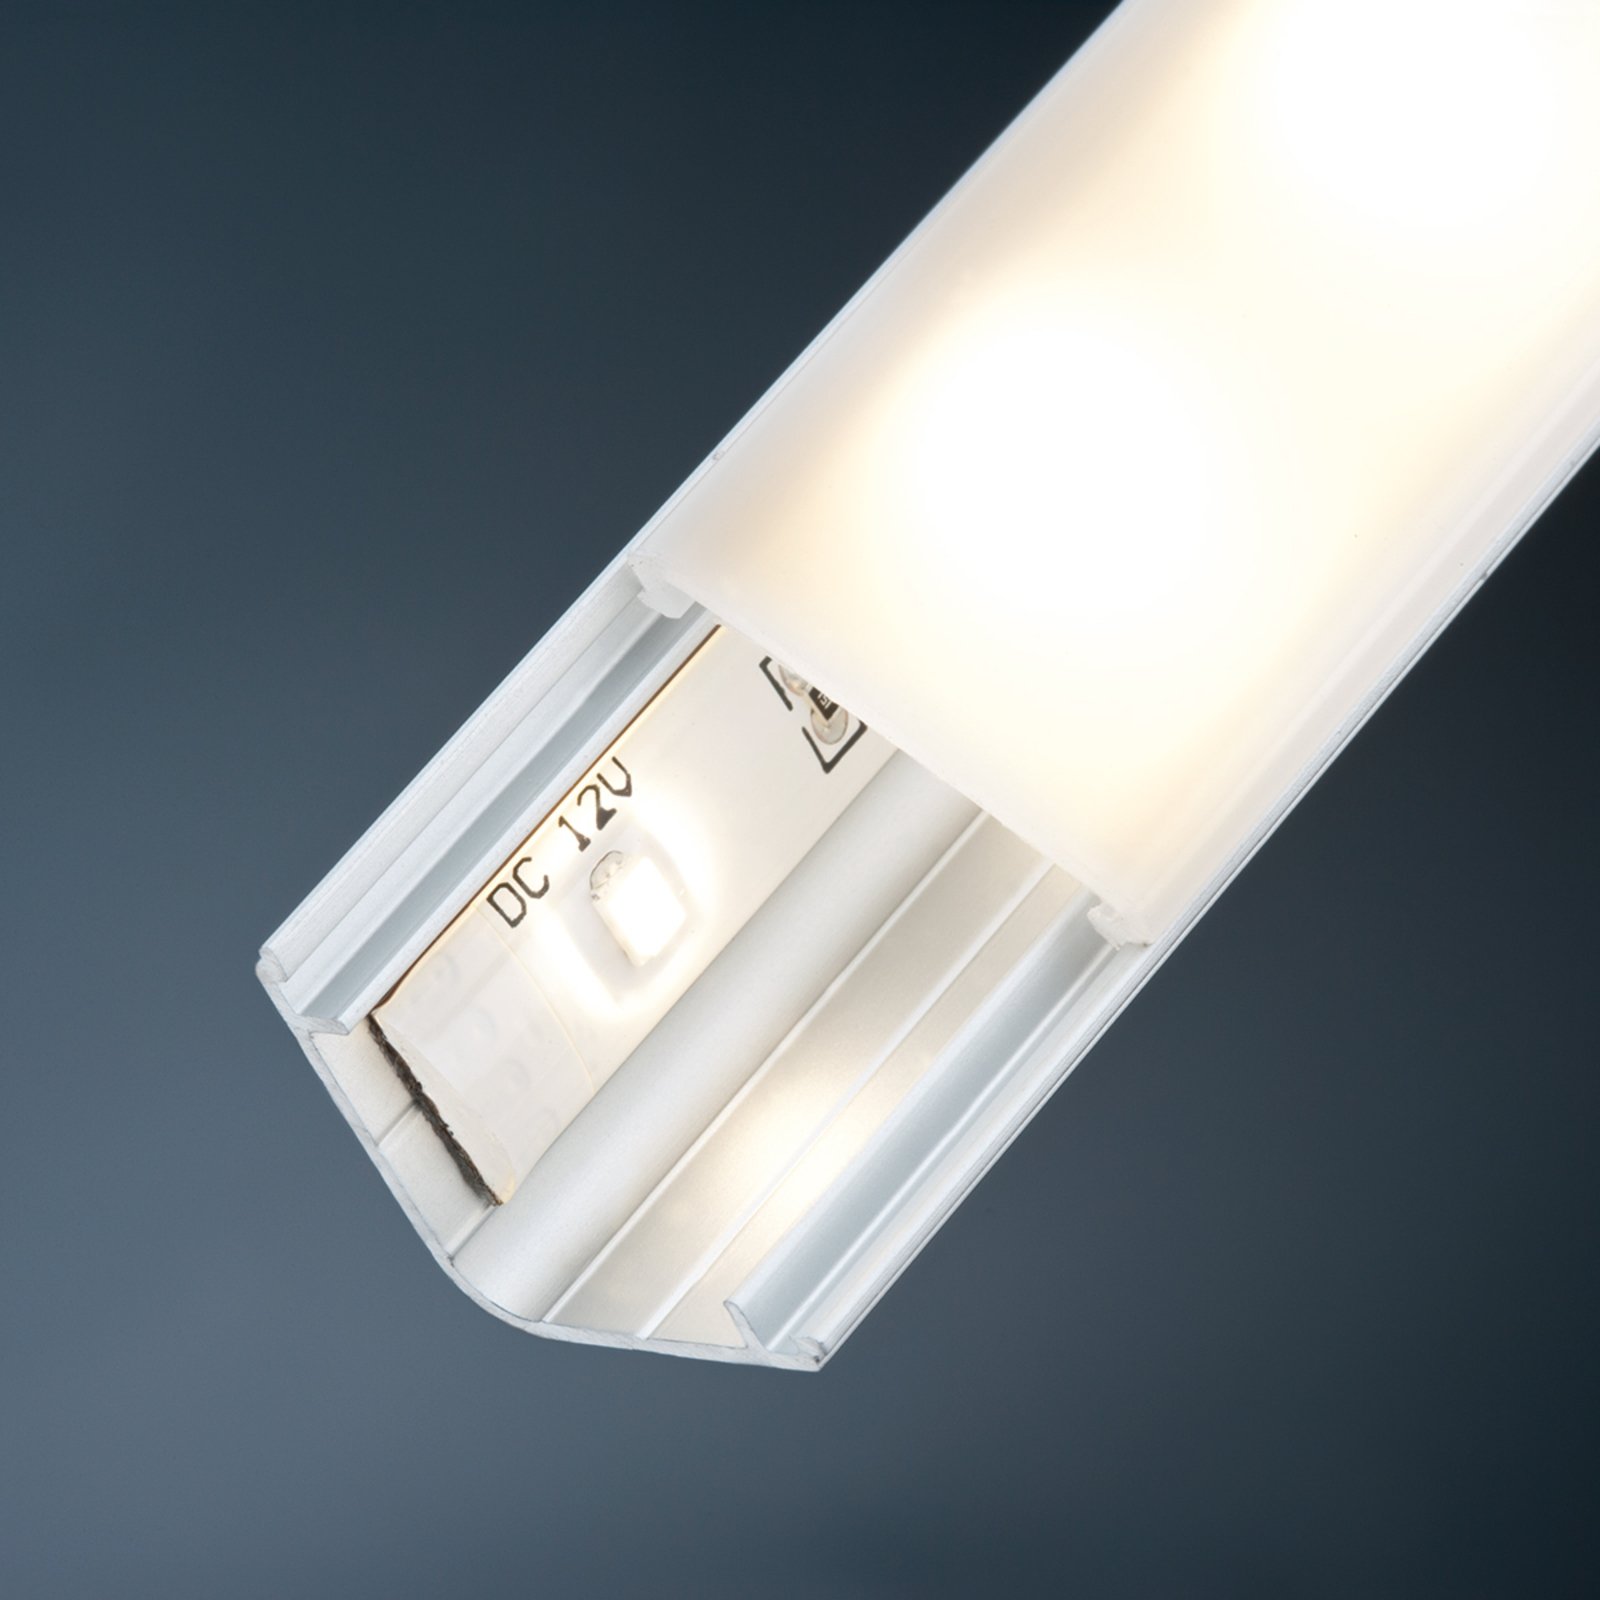 Verbindingskabel voor Your LED -Stripe-System, 1m